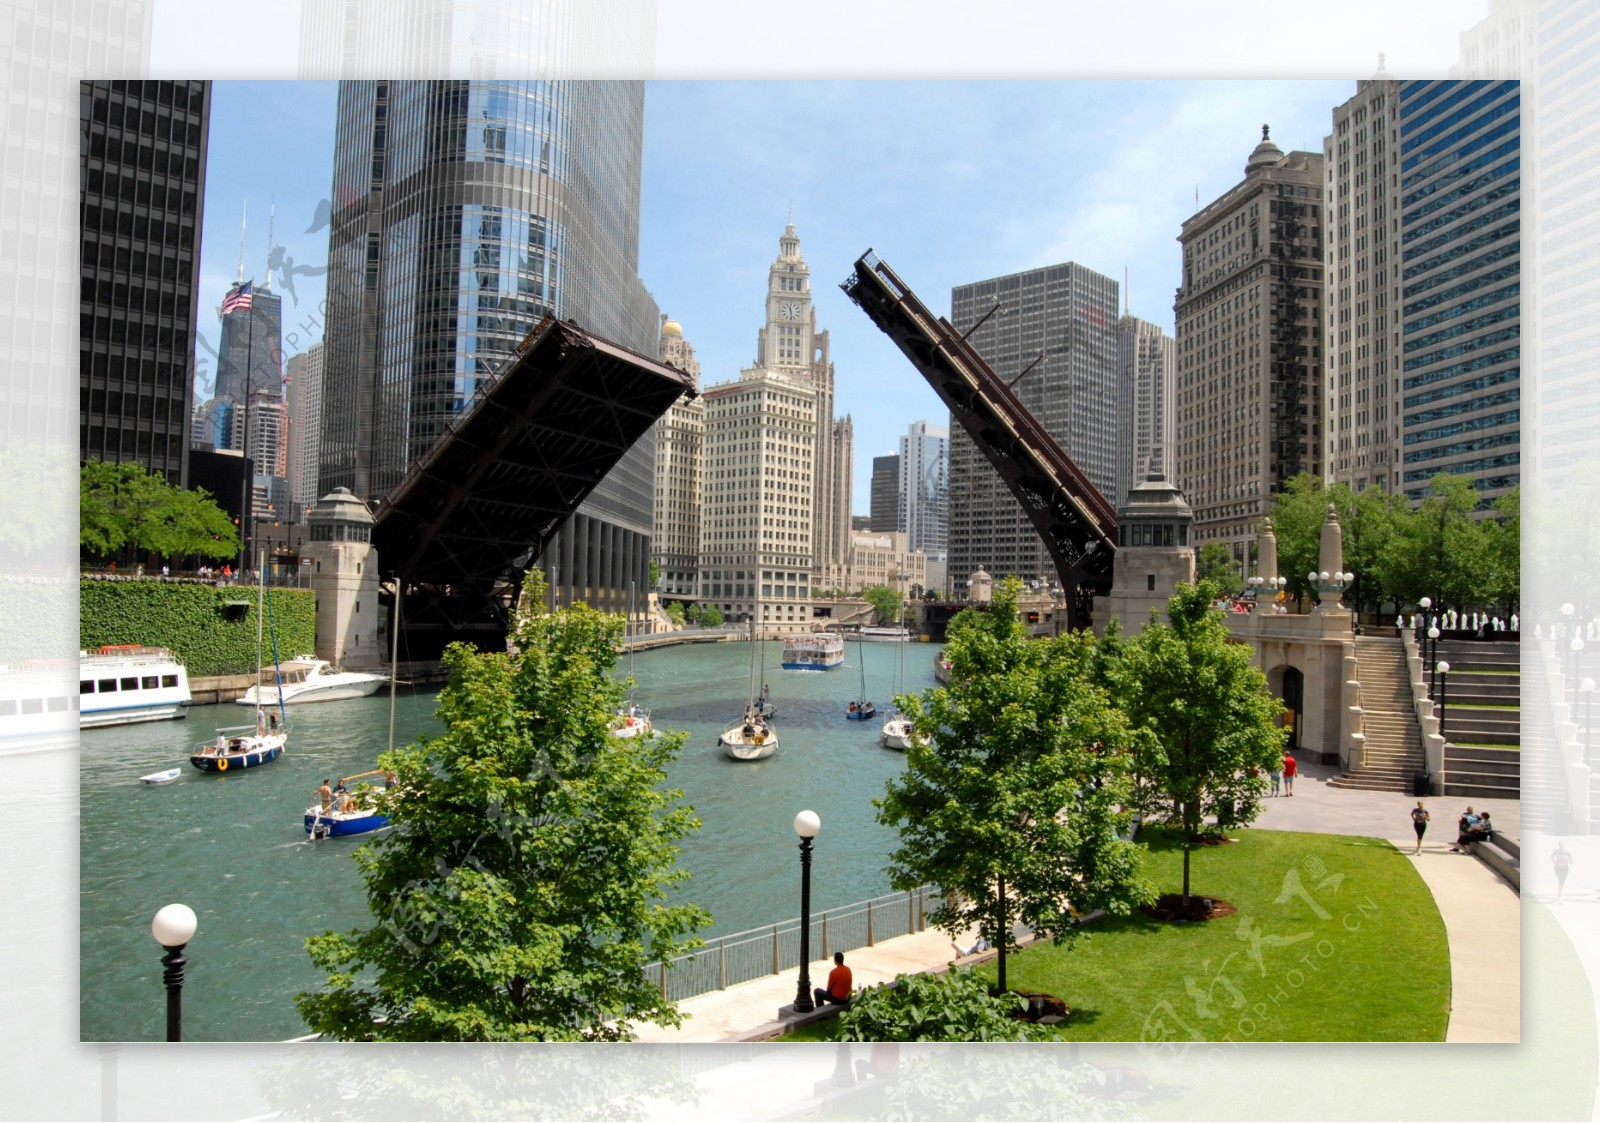 芝加哥桥梁风景图片